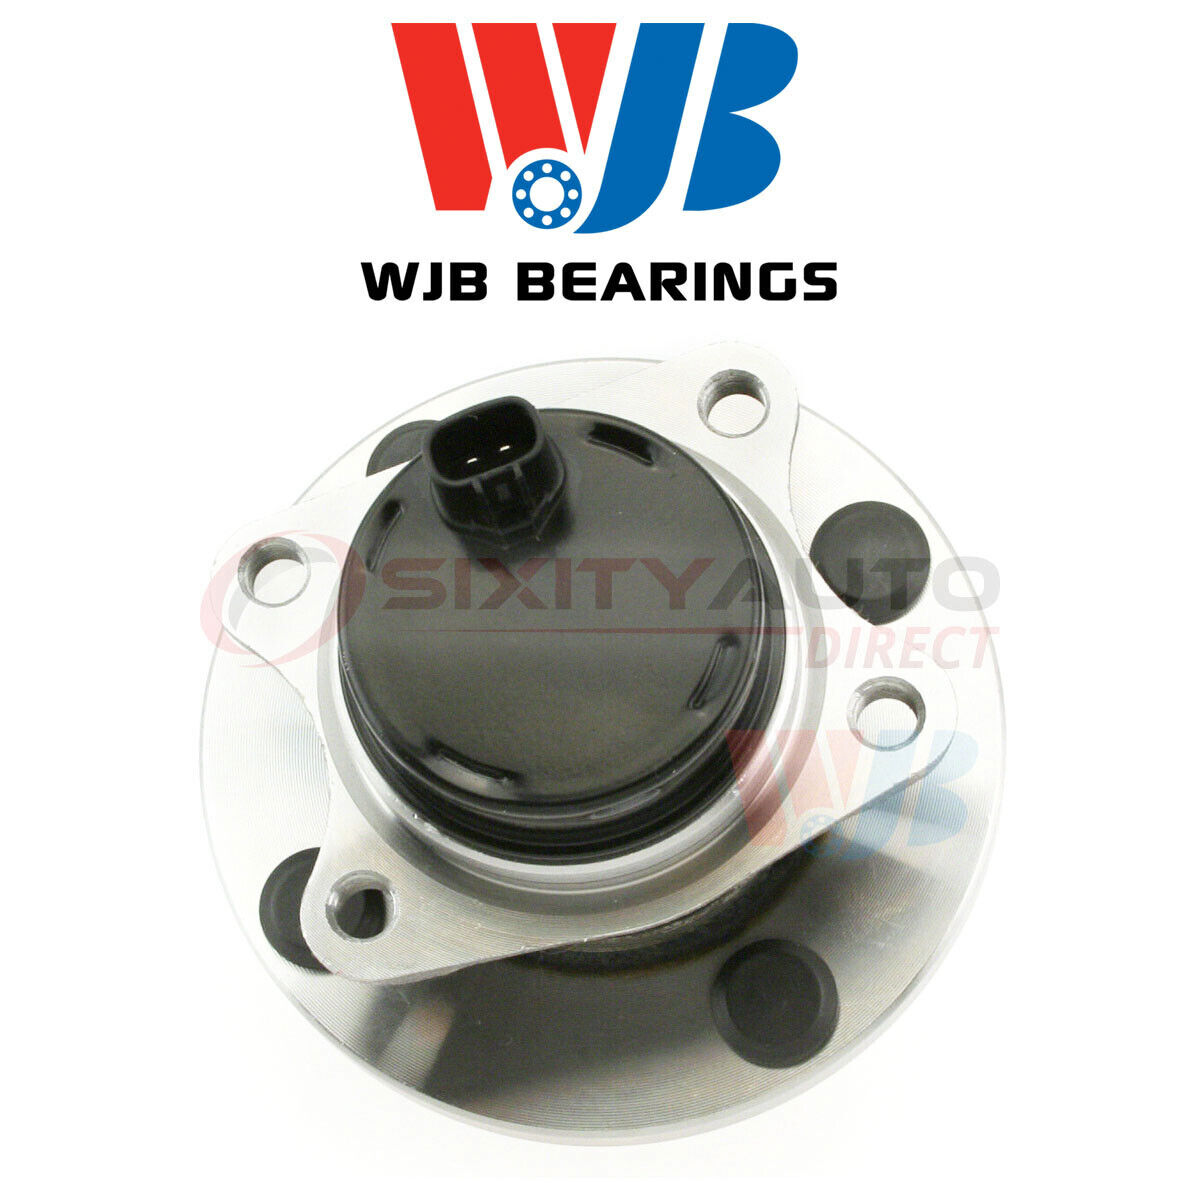 WJB Wheel Bearing & Hub Assembly for 2000-2005 Toyota MR2 Spyder 1.8L L4 - qx